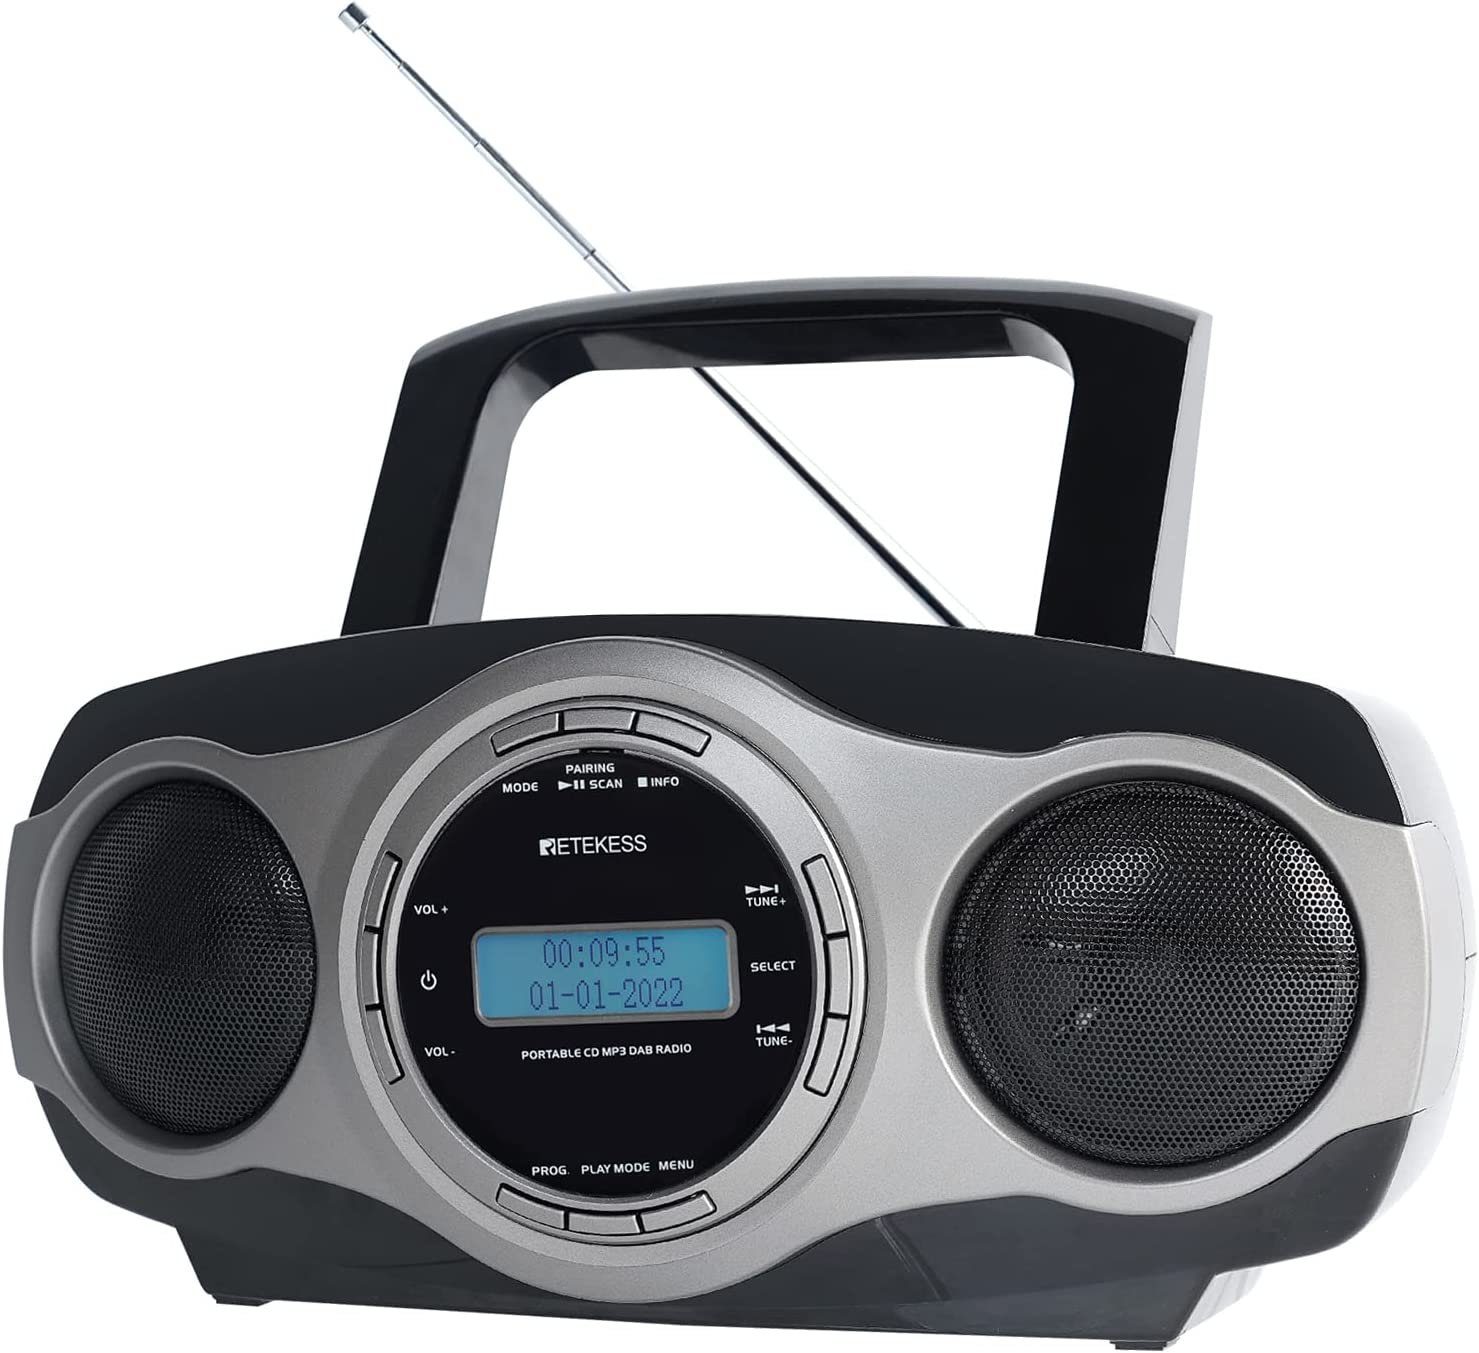 Retekess TR631 DAB Radio mit CD-Player, Boombox Bluetooth for Ostergeschenk  CD-Radiorecorder (DAB FM Radio mit Bluetooth, FM-Stereo, MP3 Player, LCD  Display mit Hintergrundbeleuchtung)